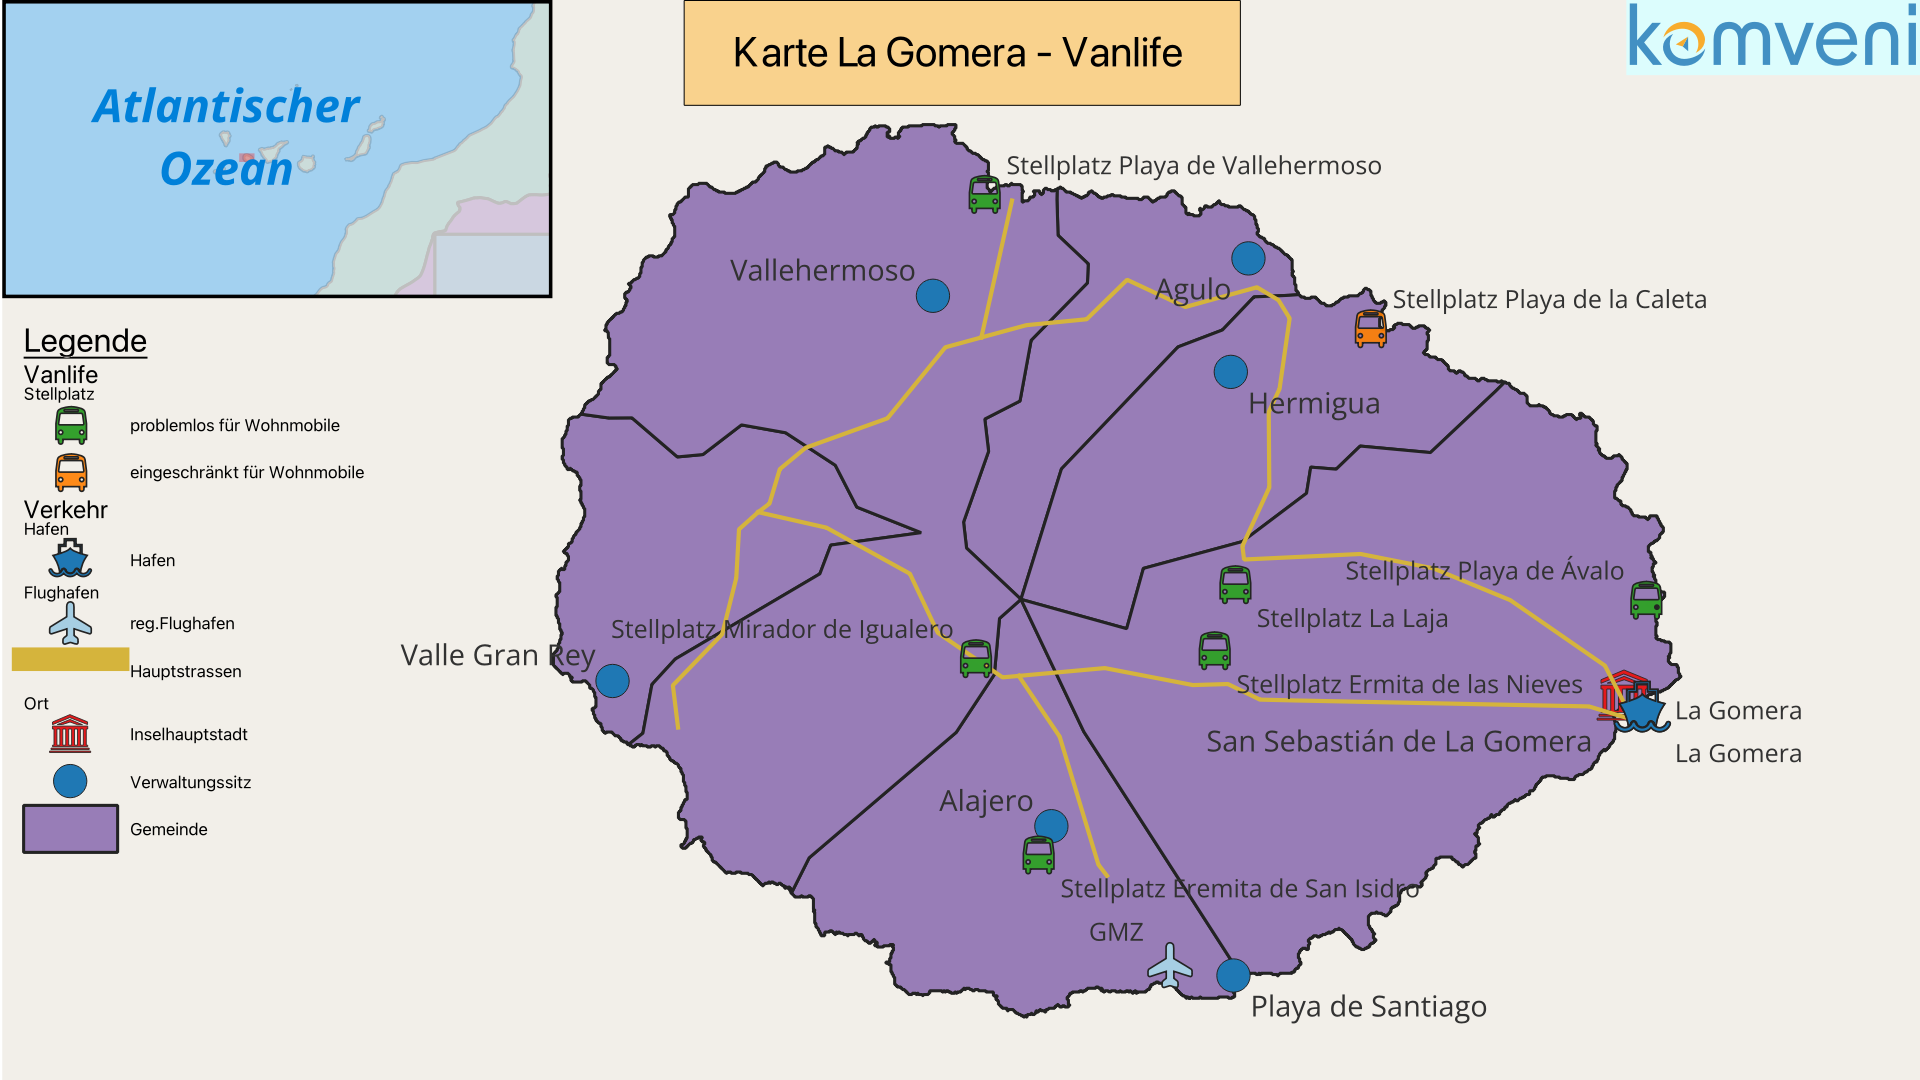 Karte La Gomera Vanlife